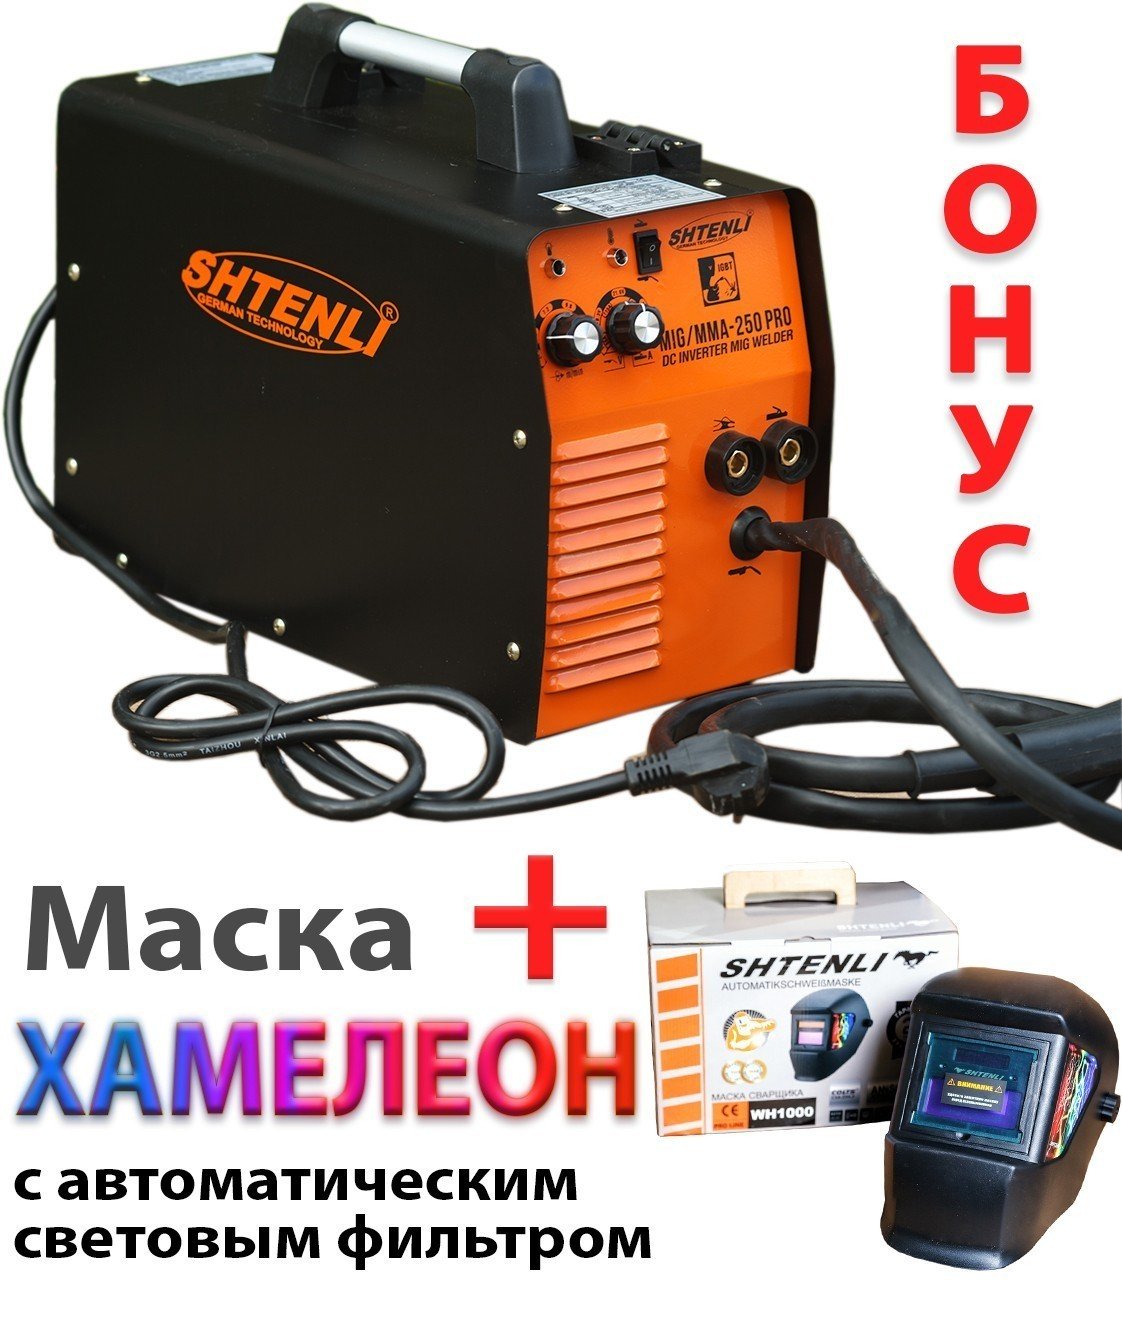 Сварочный аппарат SHTENLI MIG/MMA-250 PRO